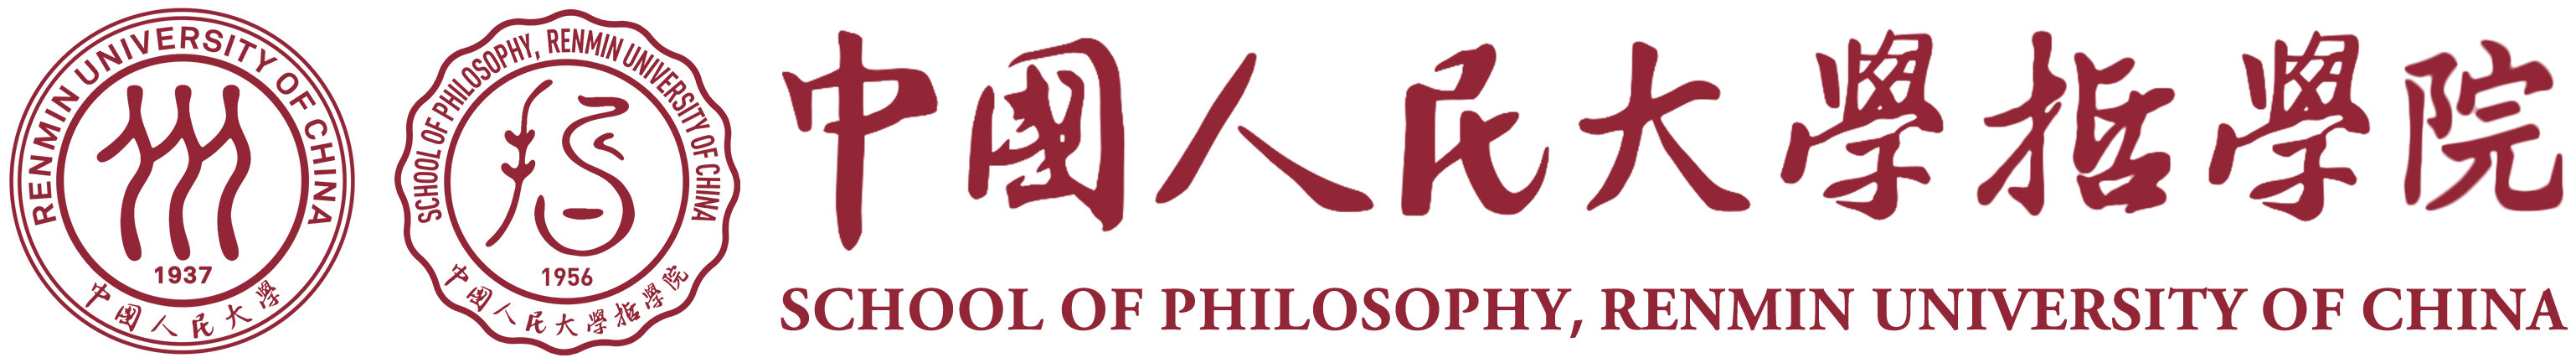 中國人民大學哲學院橫版LOGO